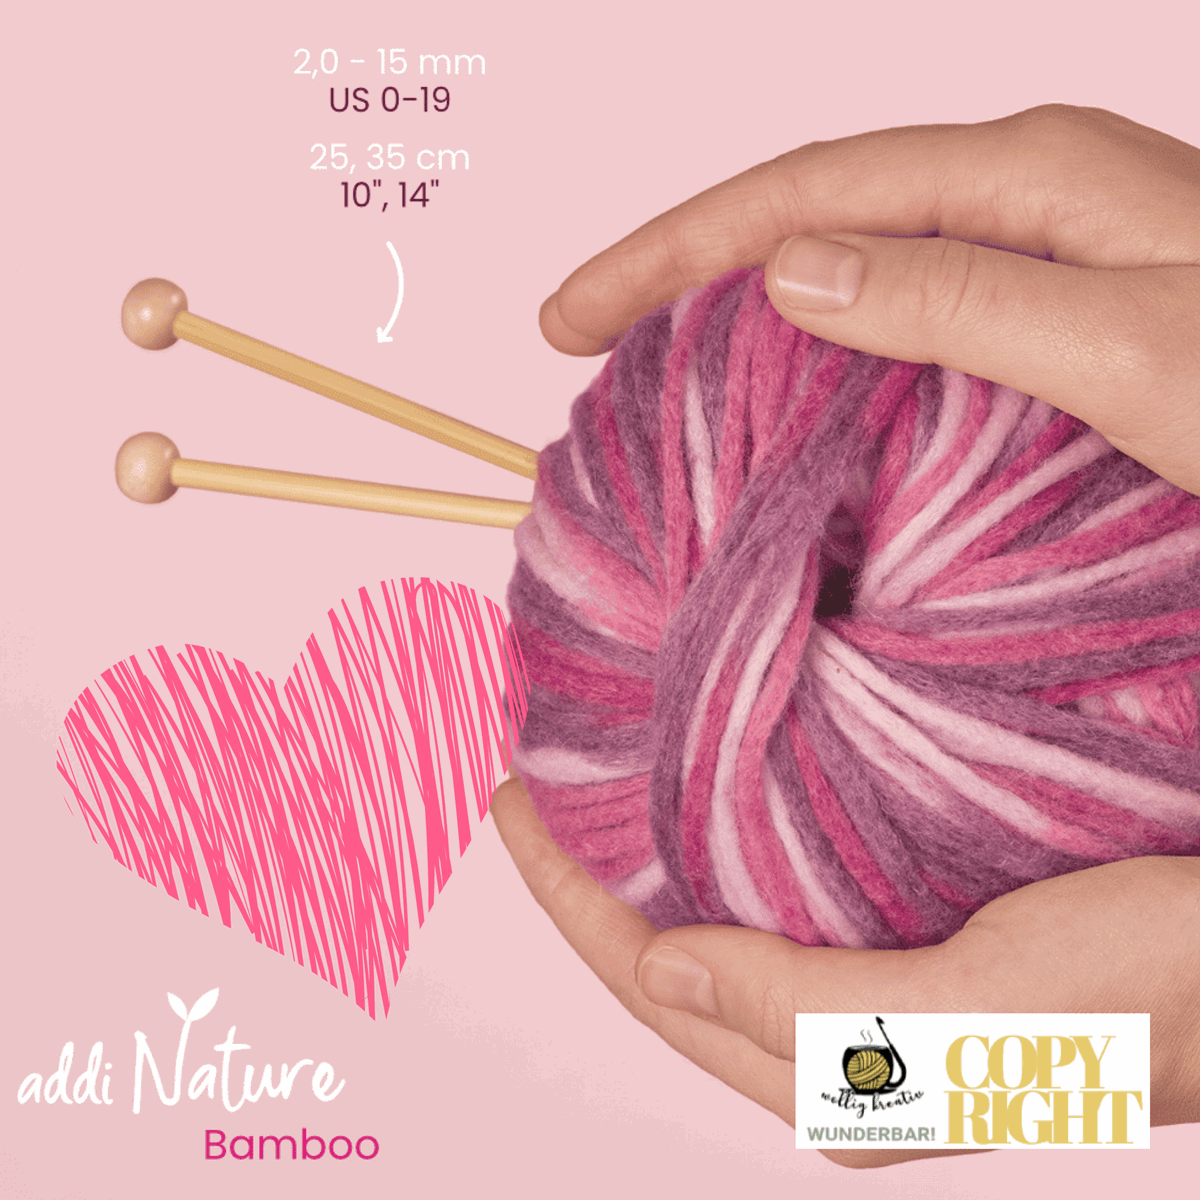 Addi, Nature Bamboo jacket knitting needle, 65007, size 3.5, length 35